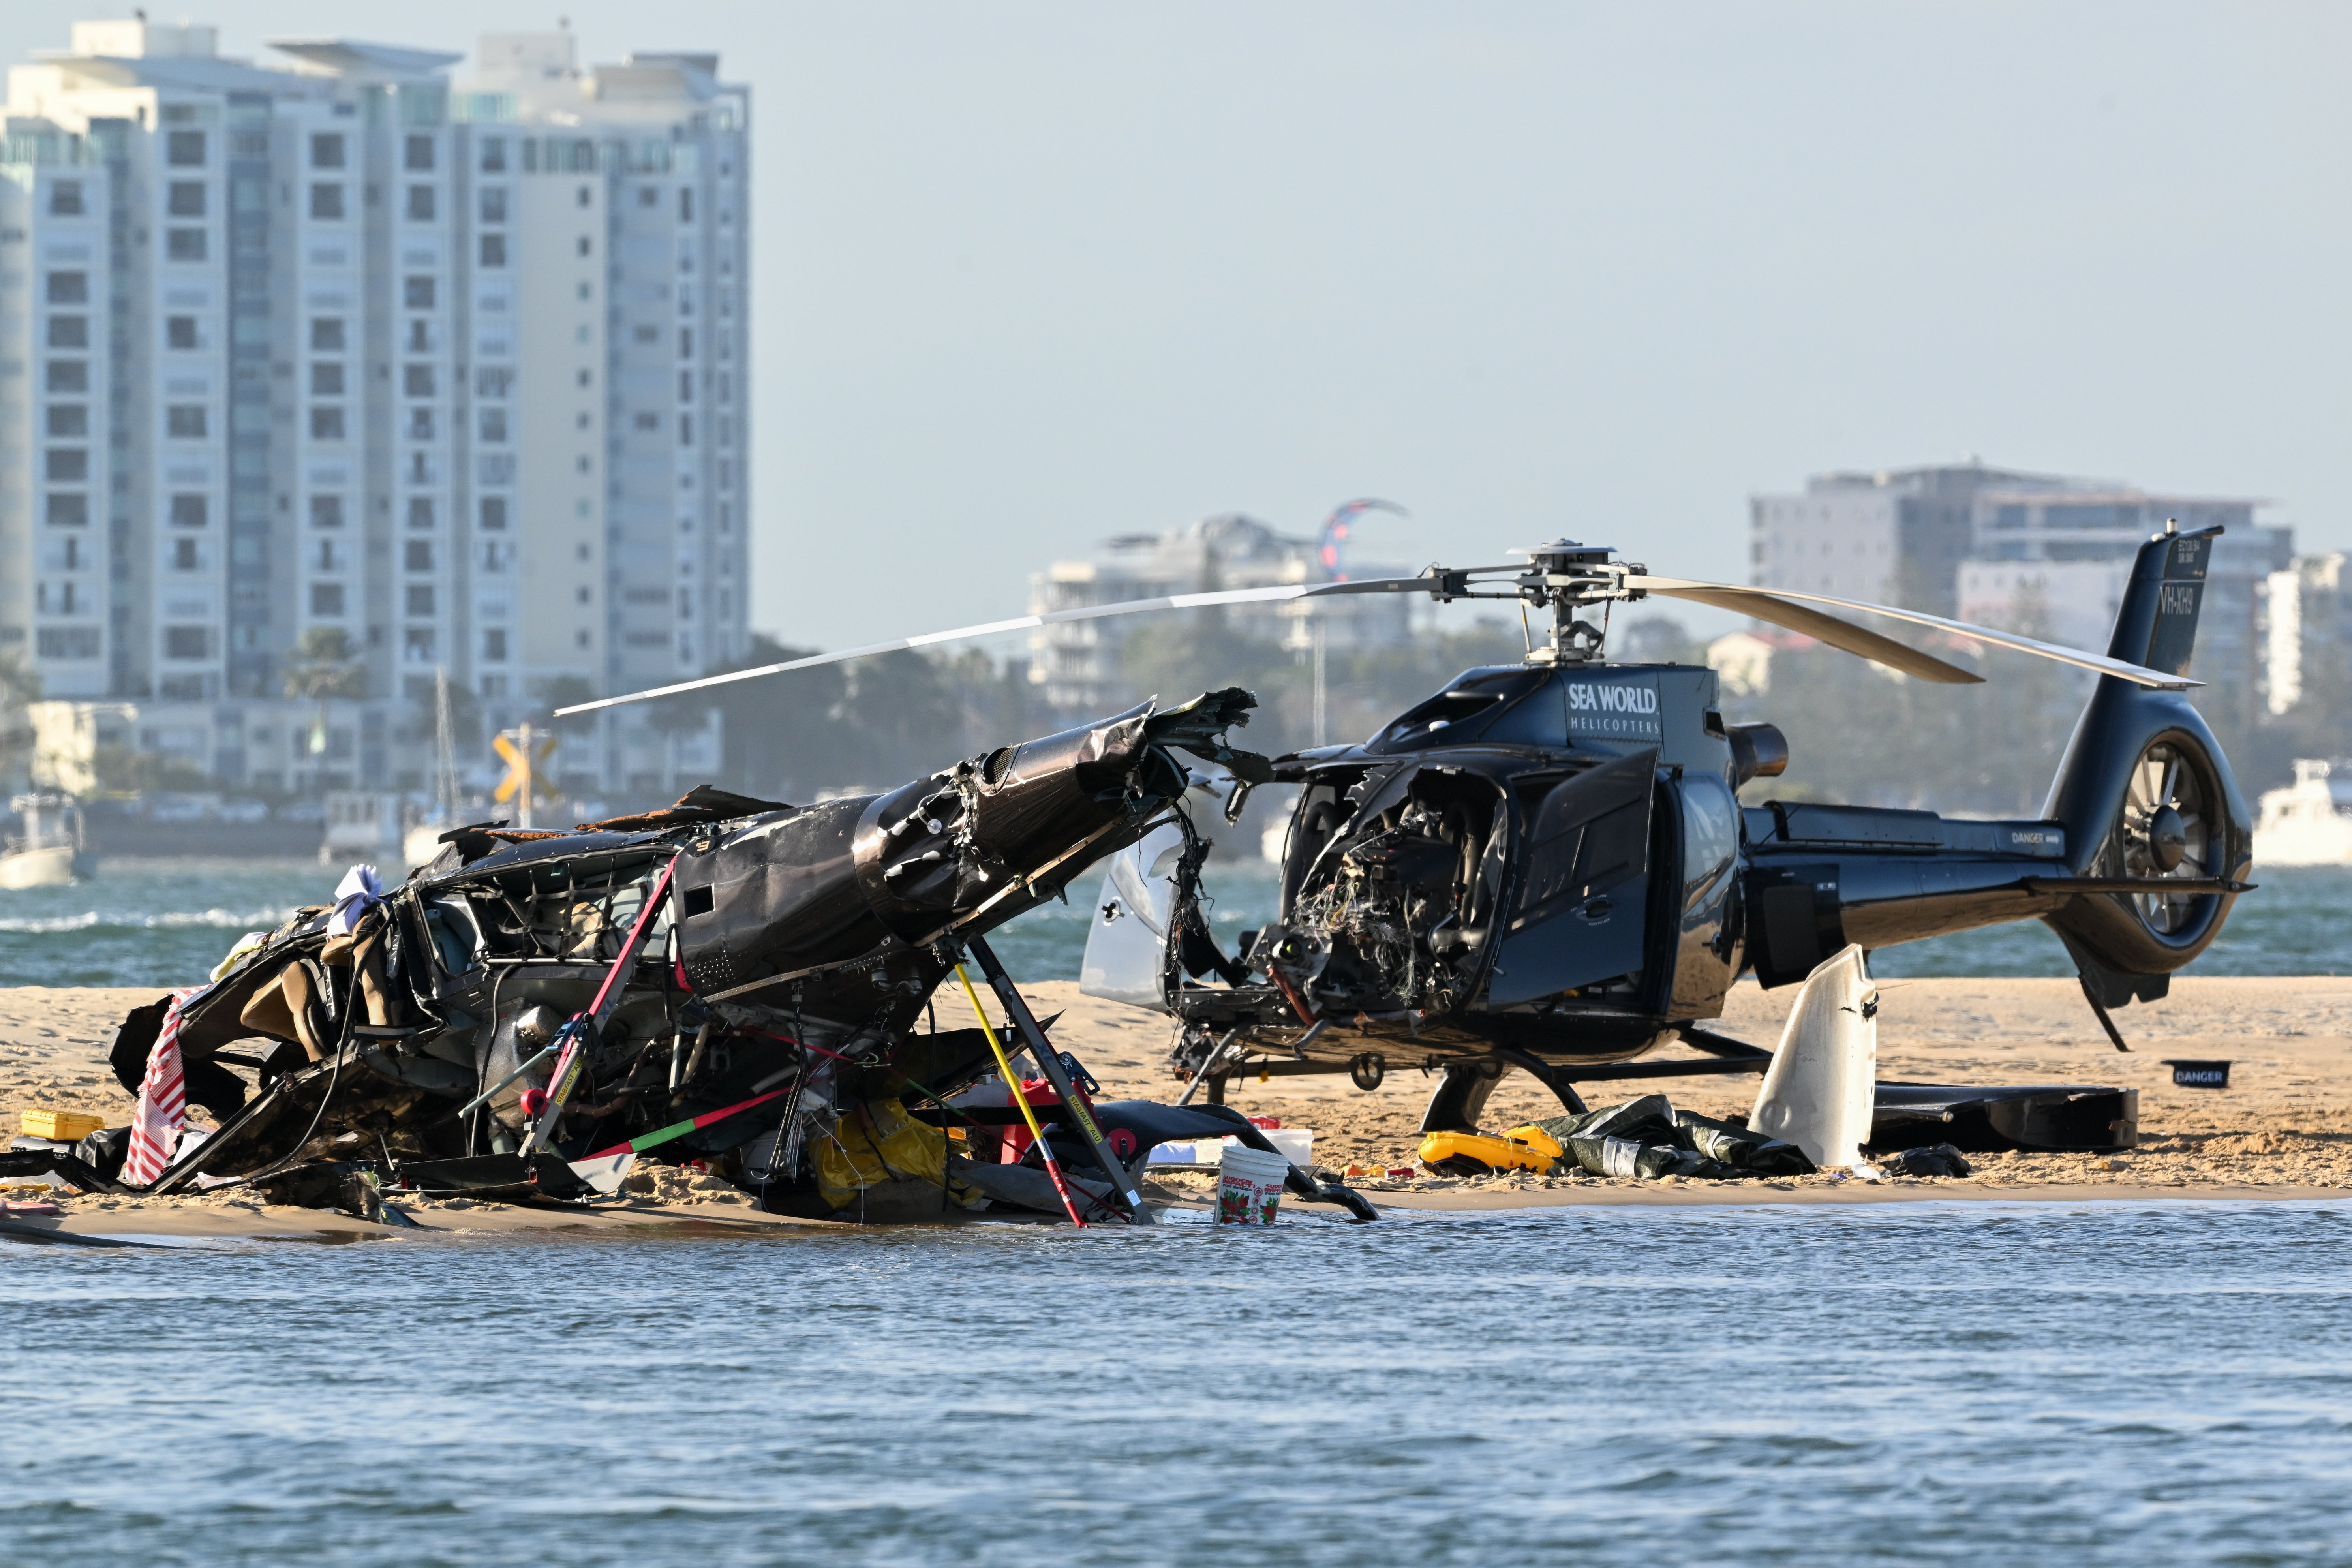 Els dos helicòpters després de l'accident en una platja de la costa est d'Austràlia / AAPIMAGE - DPA